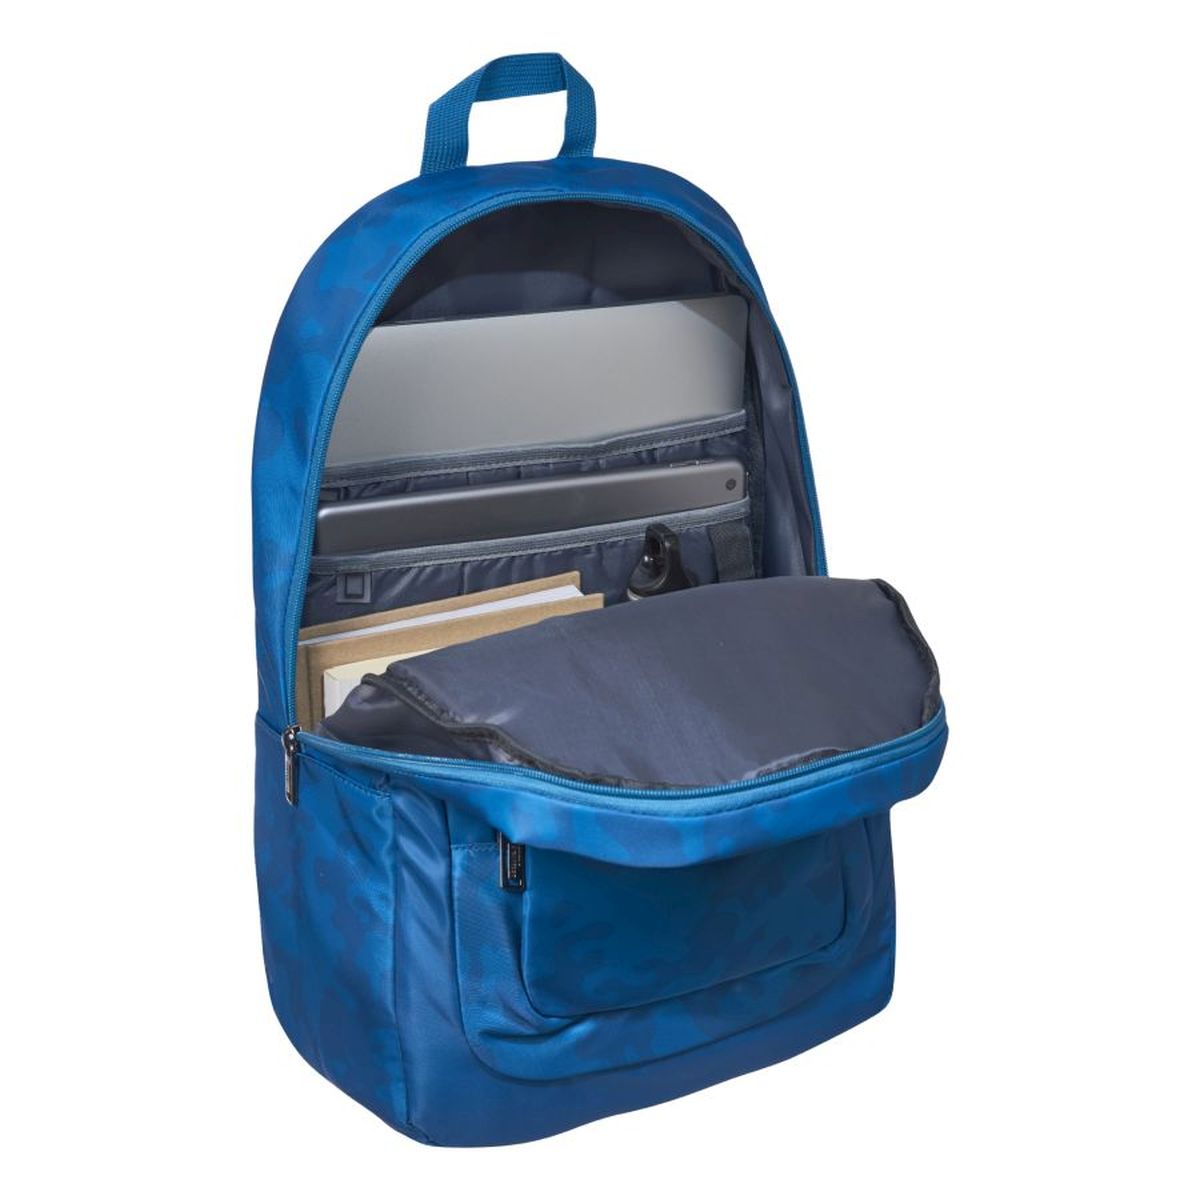 Backpack Poitou Trends Blue Camo